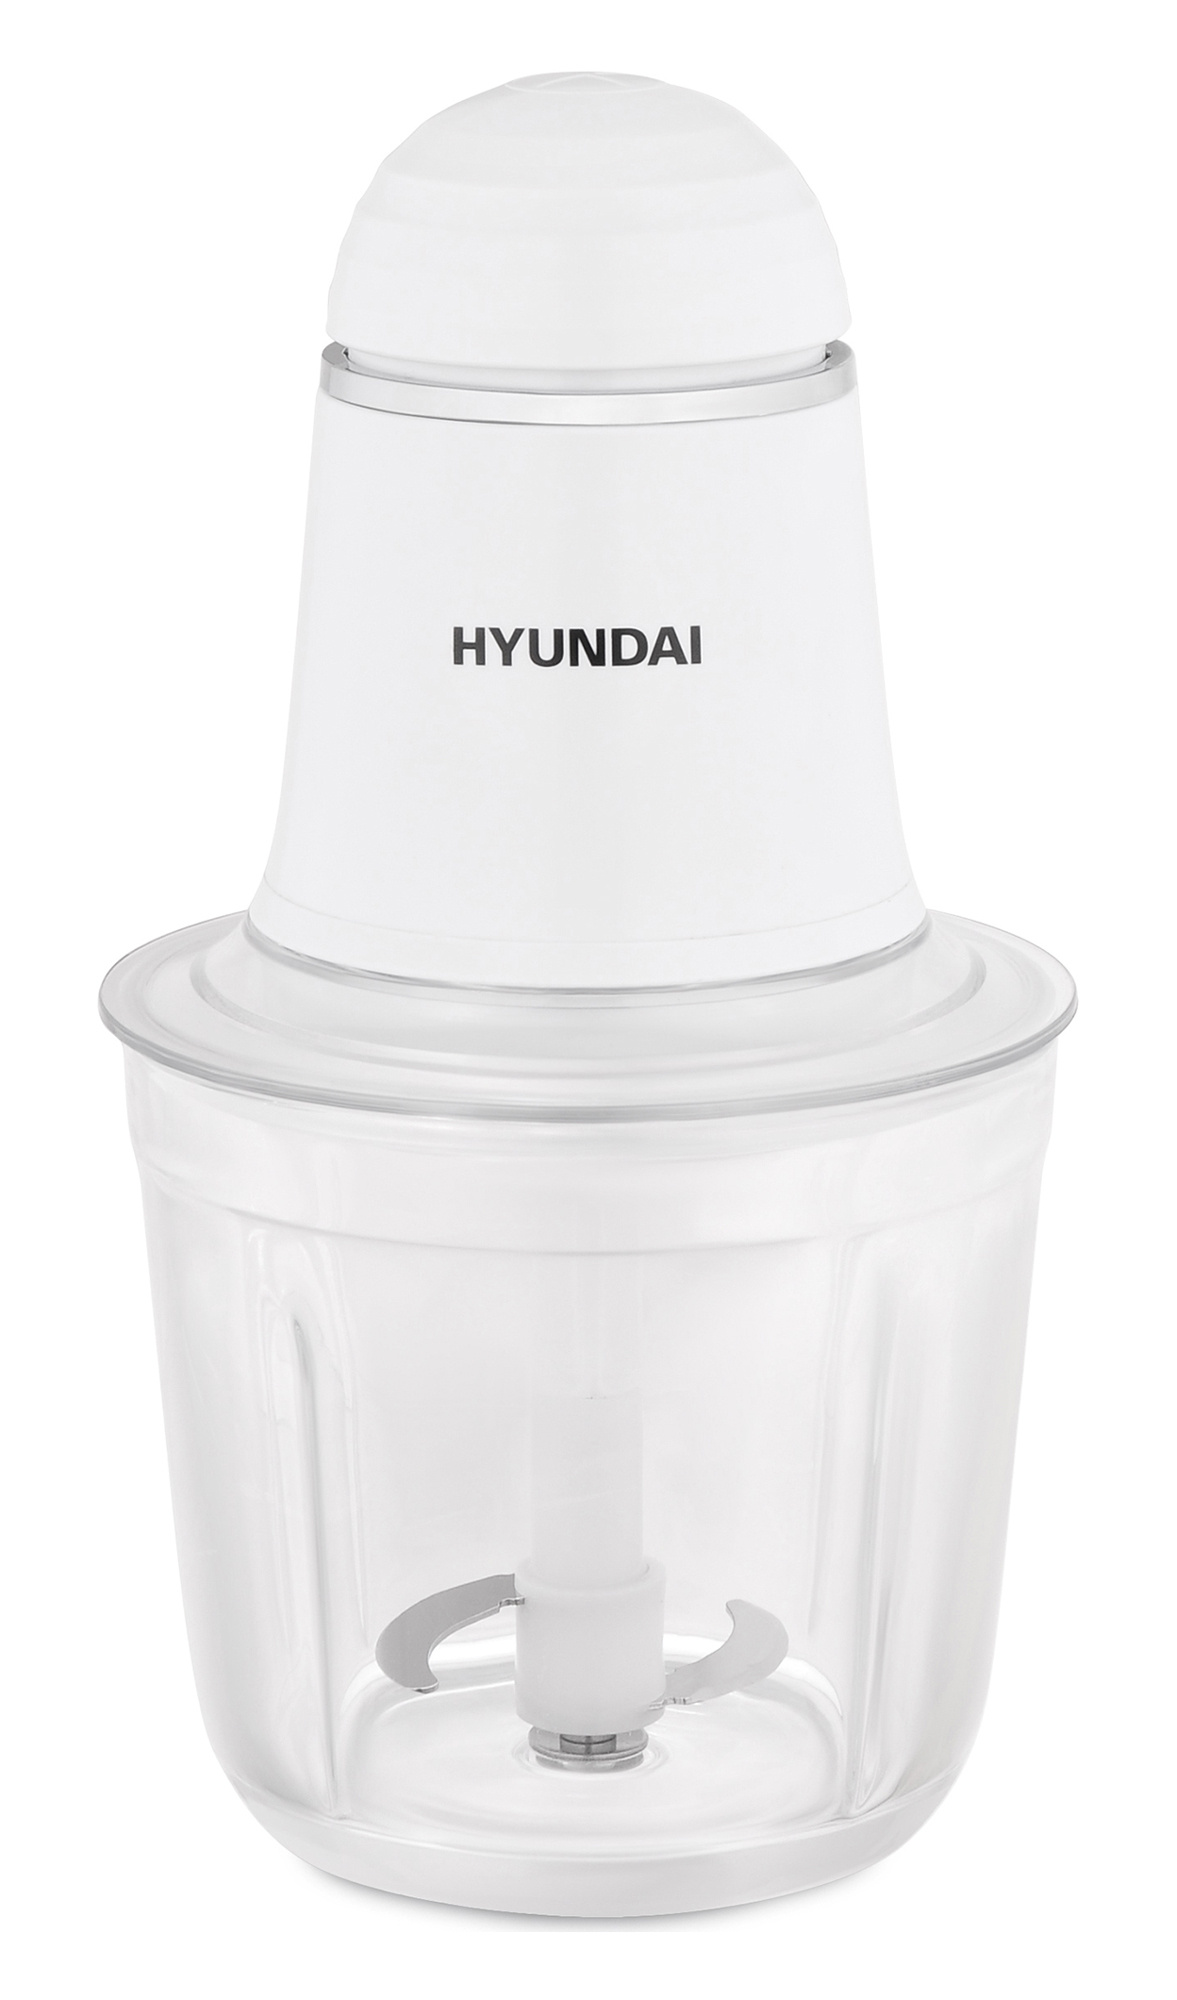 Измельчитель Hyundai HYC-P2105 White измельчитель hyundai hyc p2105 0 5л 200вт слоновая кость